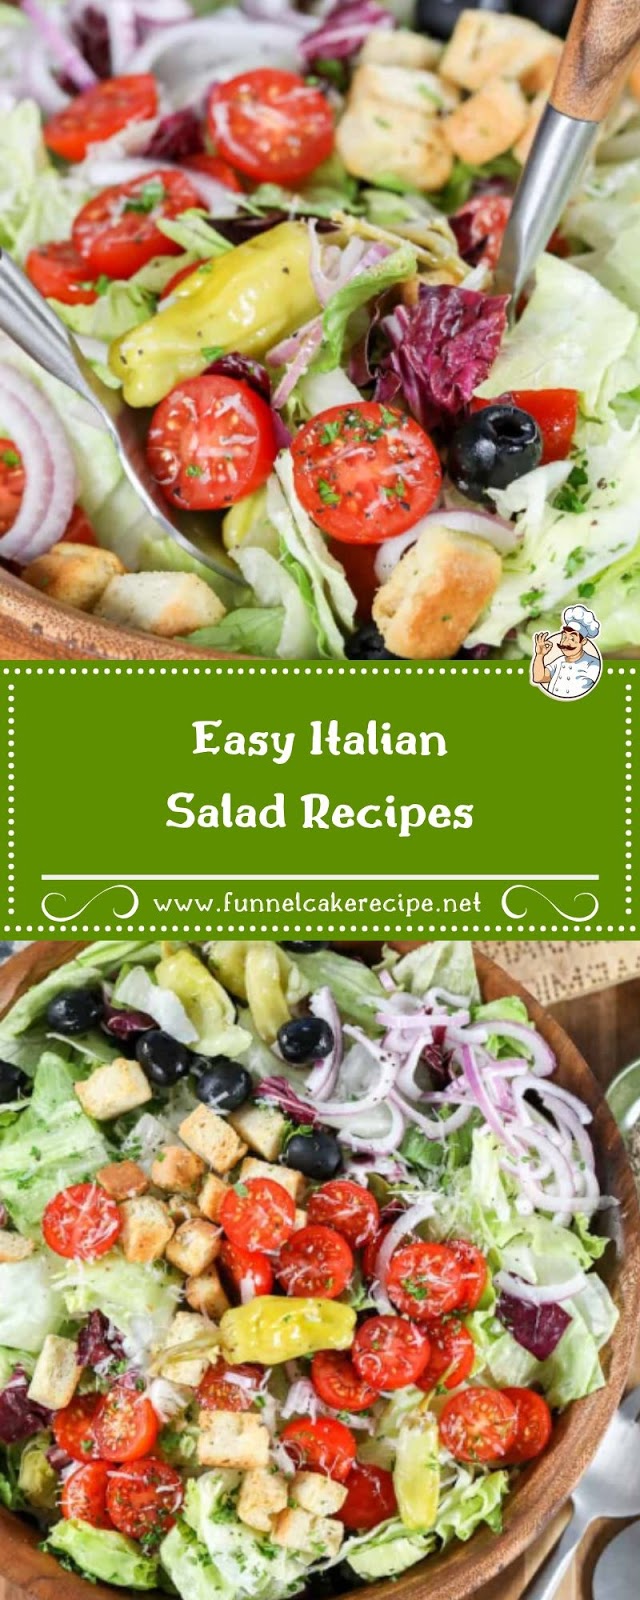 Easy Italian Salad Recipes